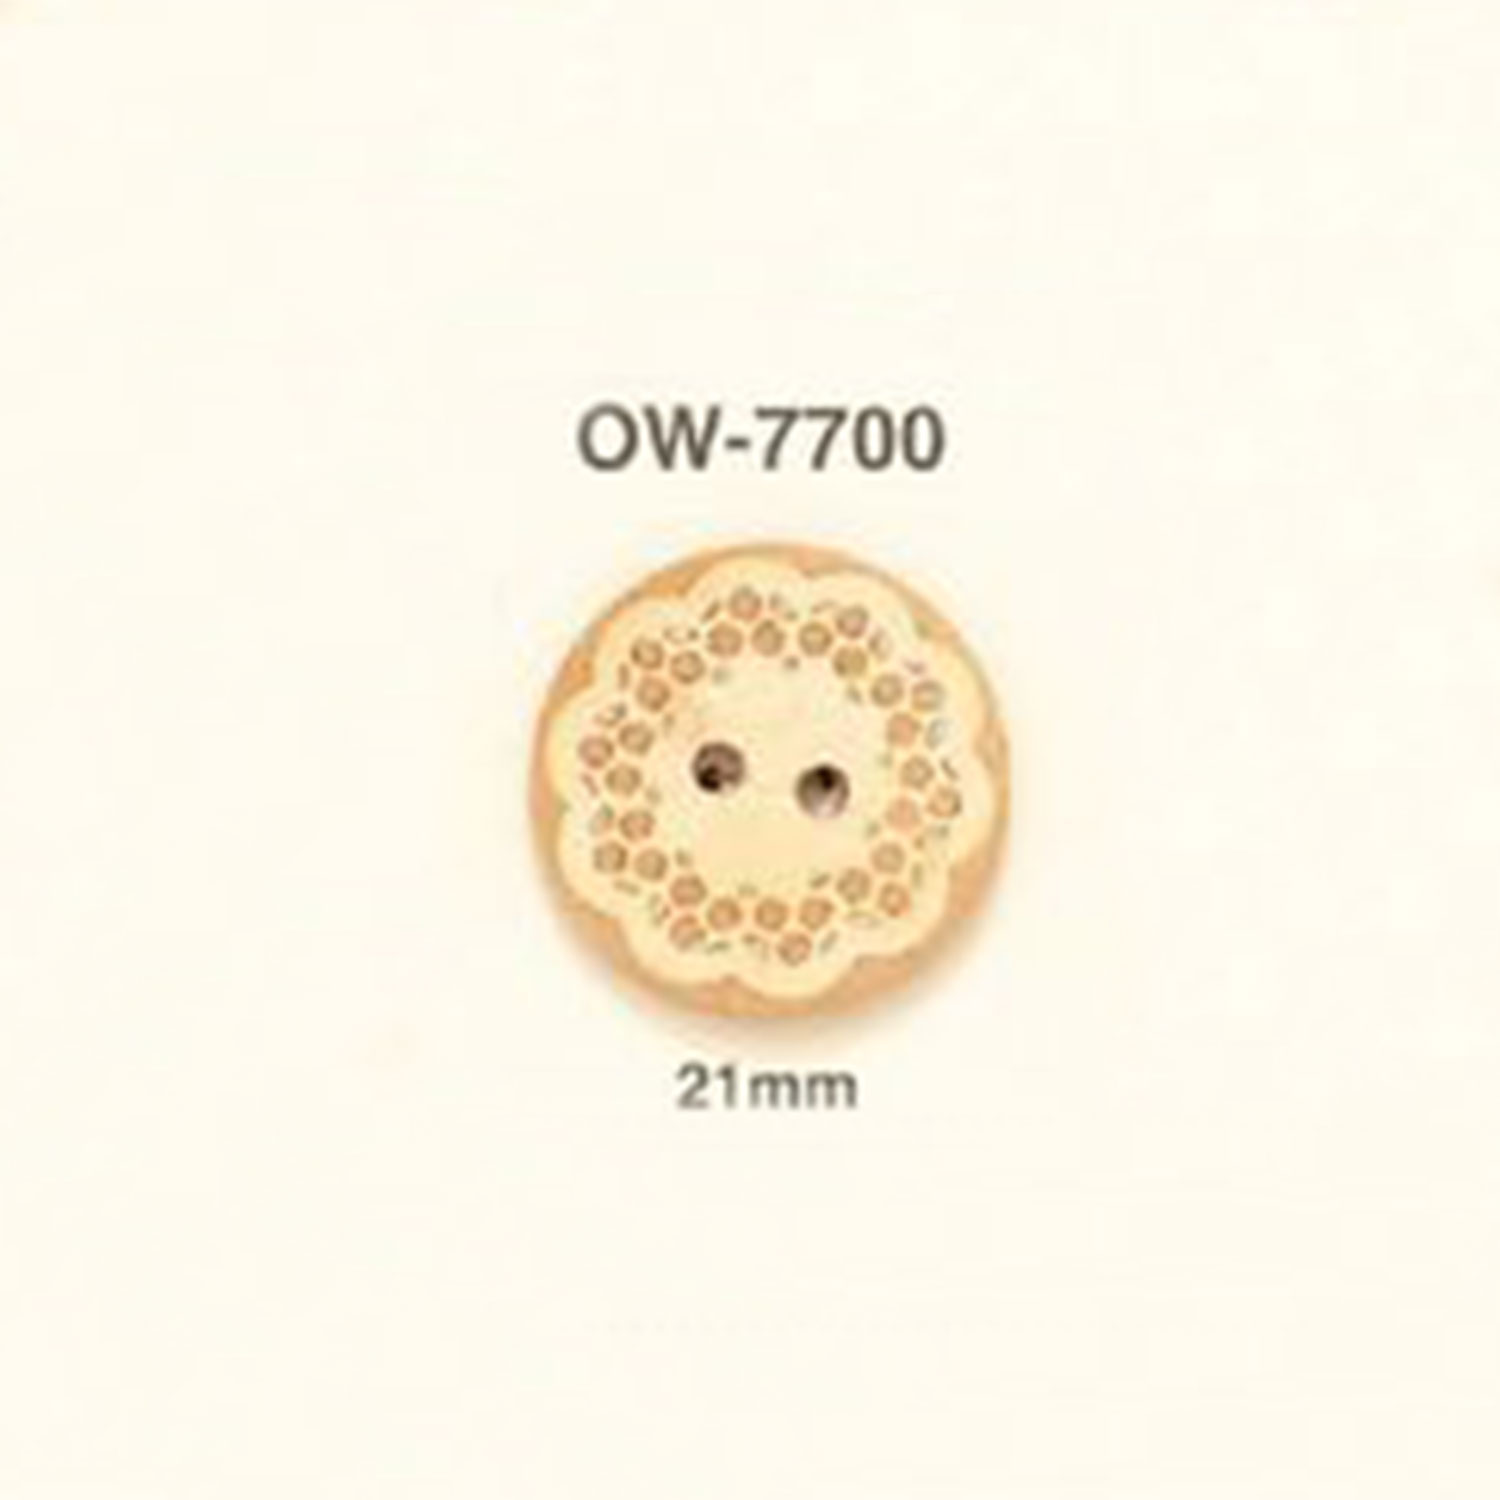 OW-7700 花卉图形元素木制纽扣 爱丽丝纽扣